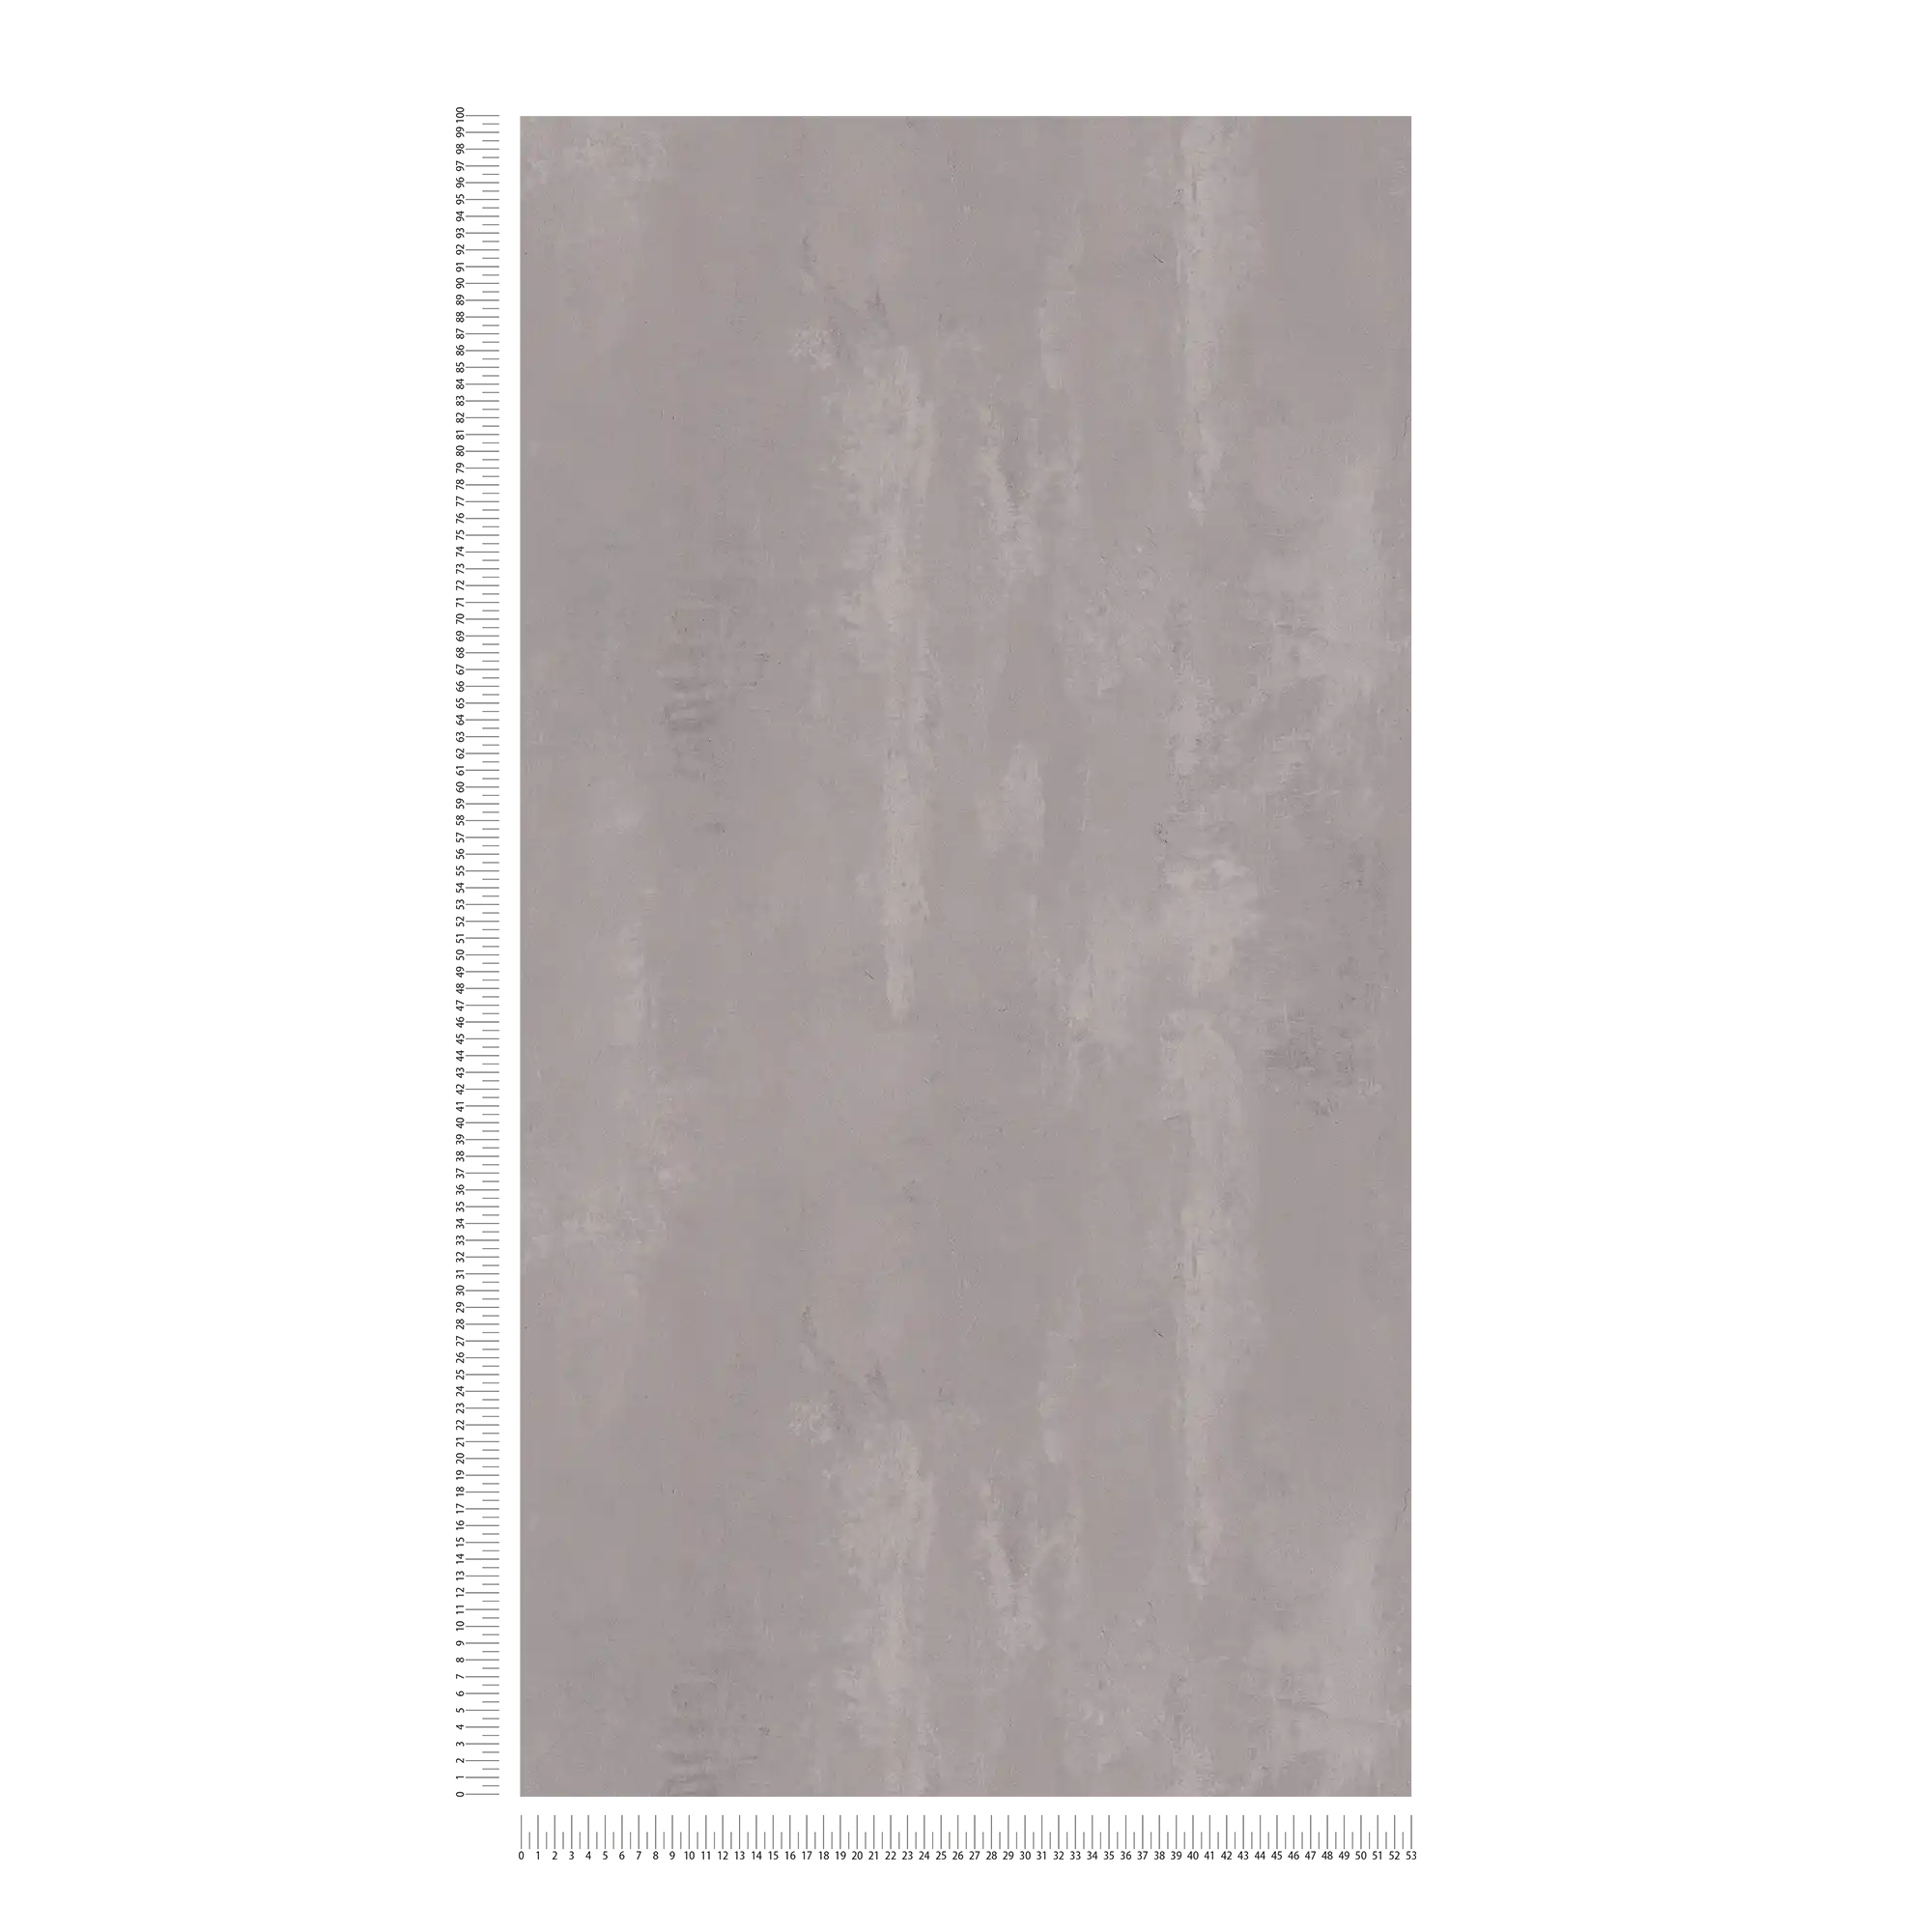             Papel pintado de tejido no tejido con aspecto de hormigón limpiado en aspecto usado - gris
        